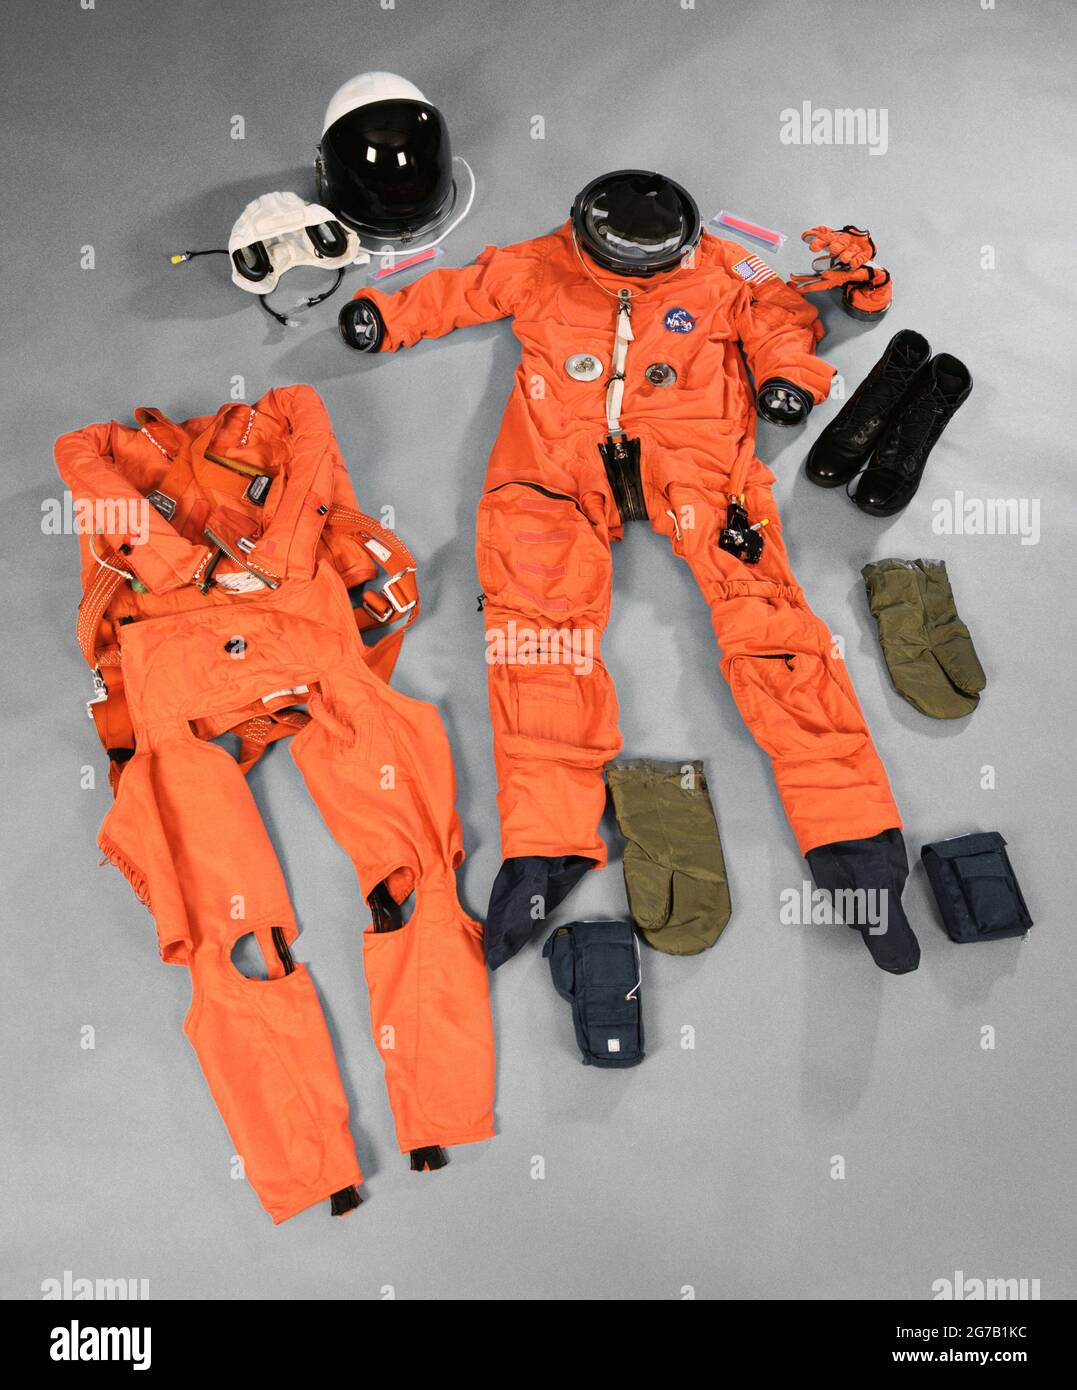 Documentación de sobremesa del equipo de escape de la tripulación del transbordador espacial. Vistas frontales del traje de escape avanzado (ACES), casco, soporte de comunicaciones, pantalones de adulto, botas, guantes, manoplas de supervivencia, paquetes de supervivencia, traje anti-g, conjunto de arnés y varillas ligeras. Se utilizó por primera vez en la STS-64, que aterrizó el 20 de septiembre de 1994. ê Una versión optimizada y mejorada de una imagen de la NASA / crédito de la NASA. Sólo para uso editorial. Foto de stock